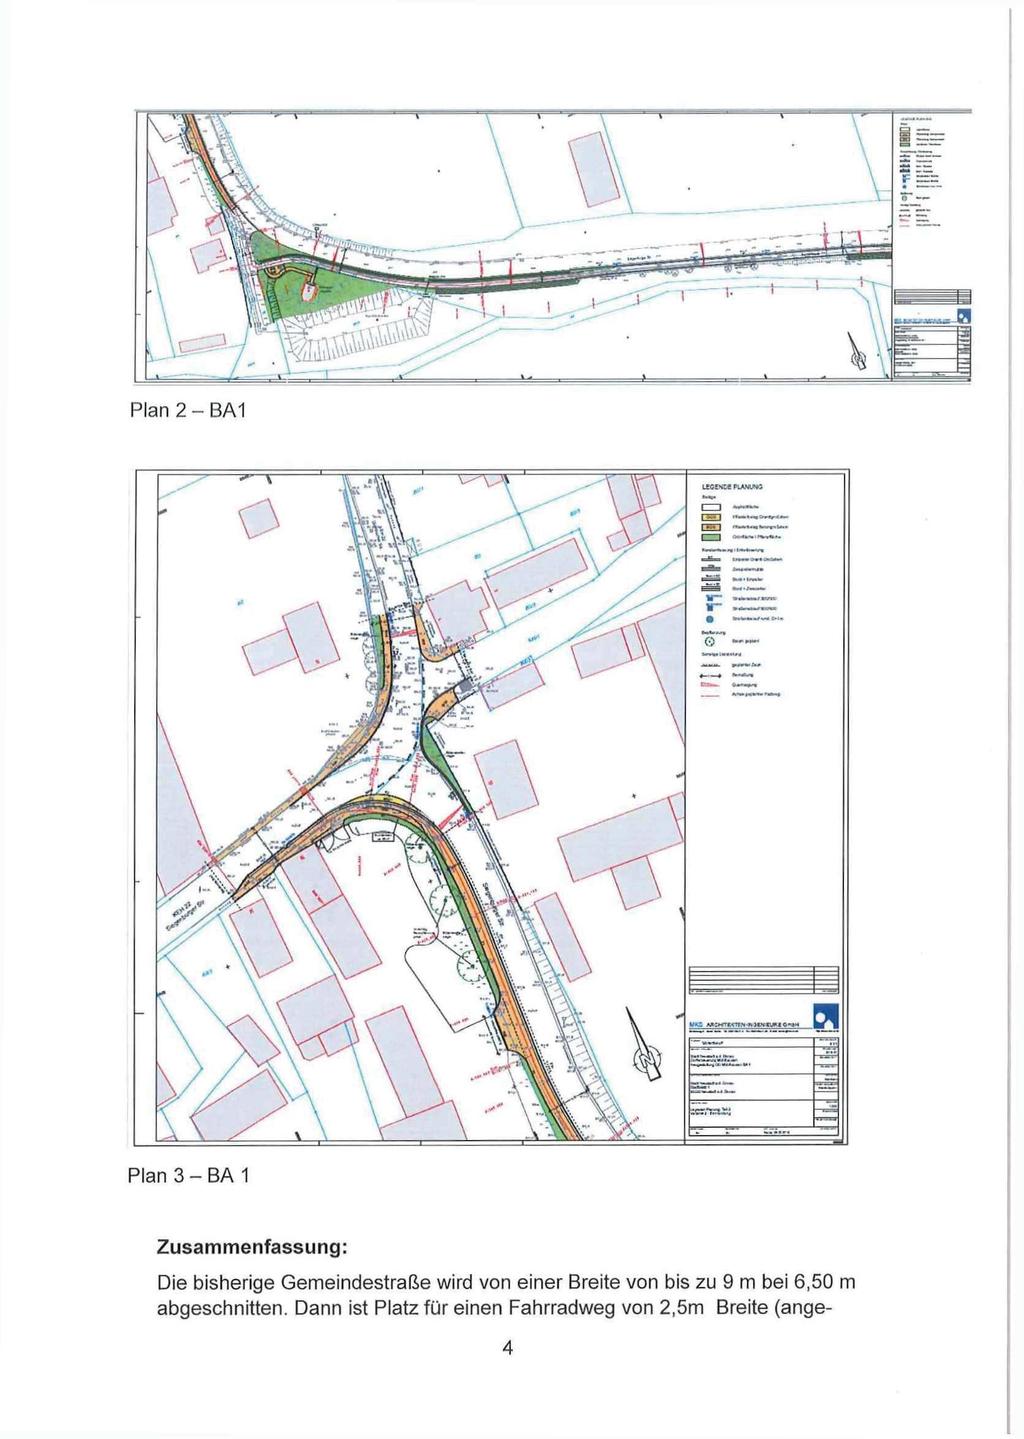 imm\ Plan 3 - BA 1 Zusammenfassung: Die bisherige Gemeindestraße wird von einer Breite von